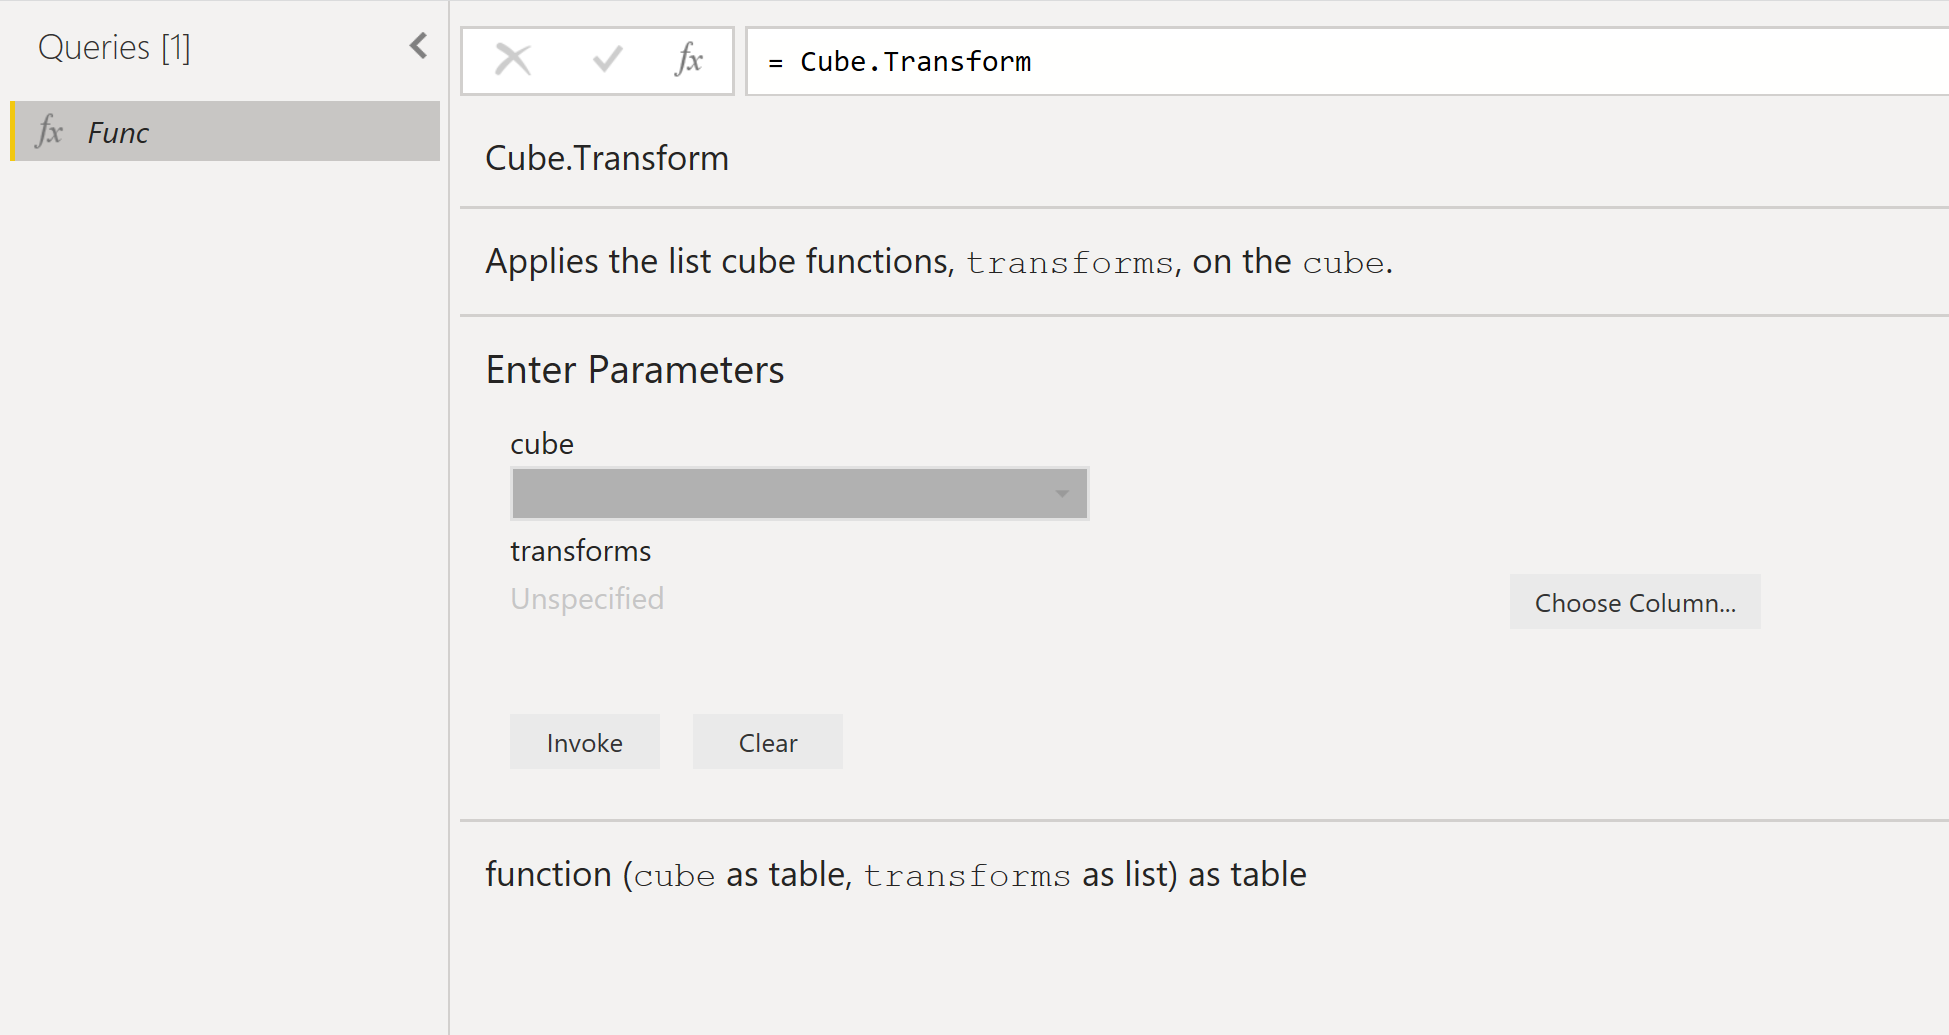 A Cube.Transform függvény adatait megjelenítő függvény létrehozása párbeszédpanel képe.